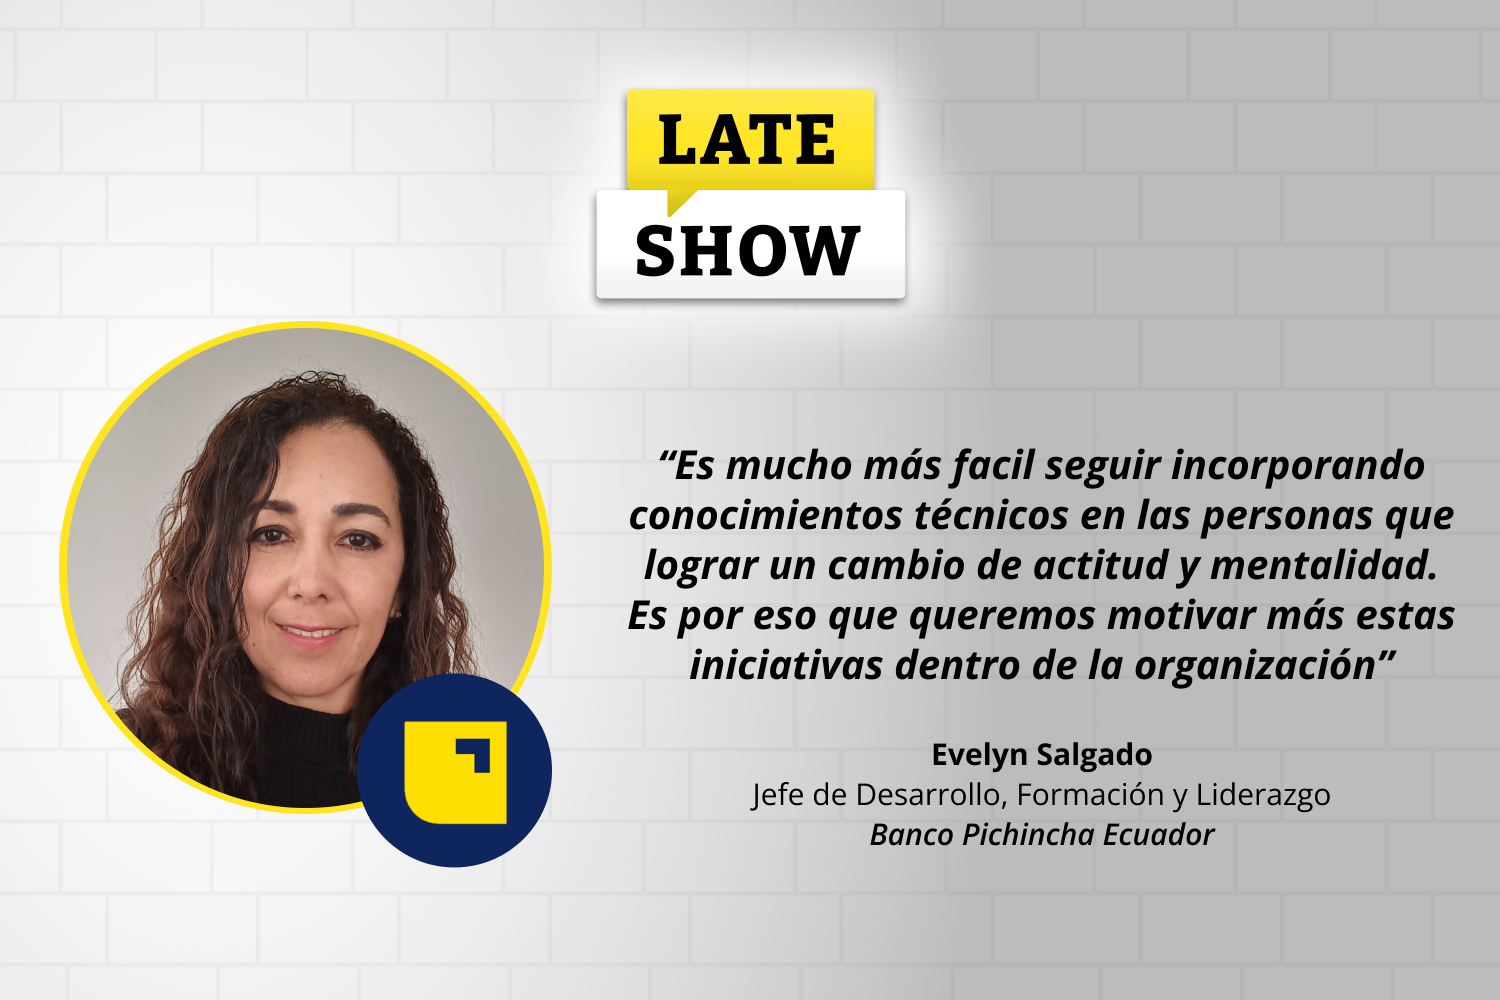 En este nuevo episodio del Late Show de Laboratoria, conversamos con Evelyn Salgado, Jefe de Desarrollo, Formación y Liderazgo en Pichincha Ecuador.